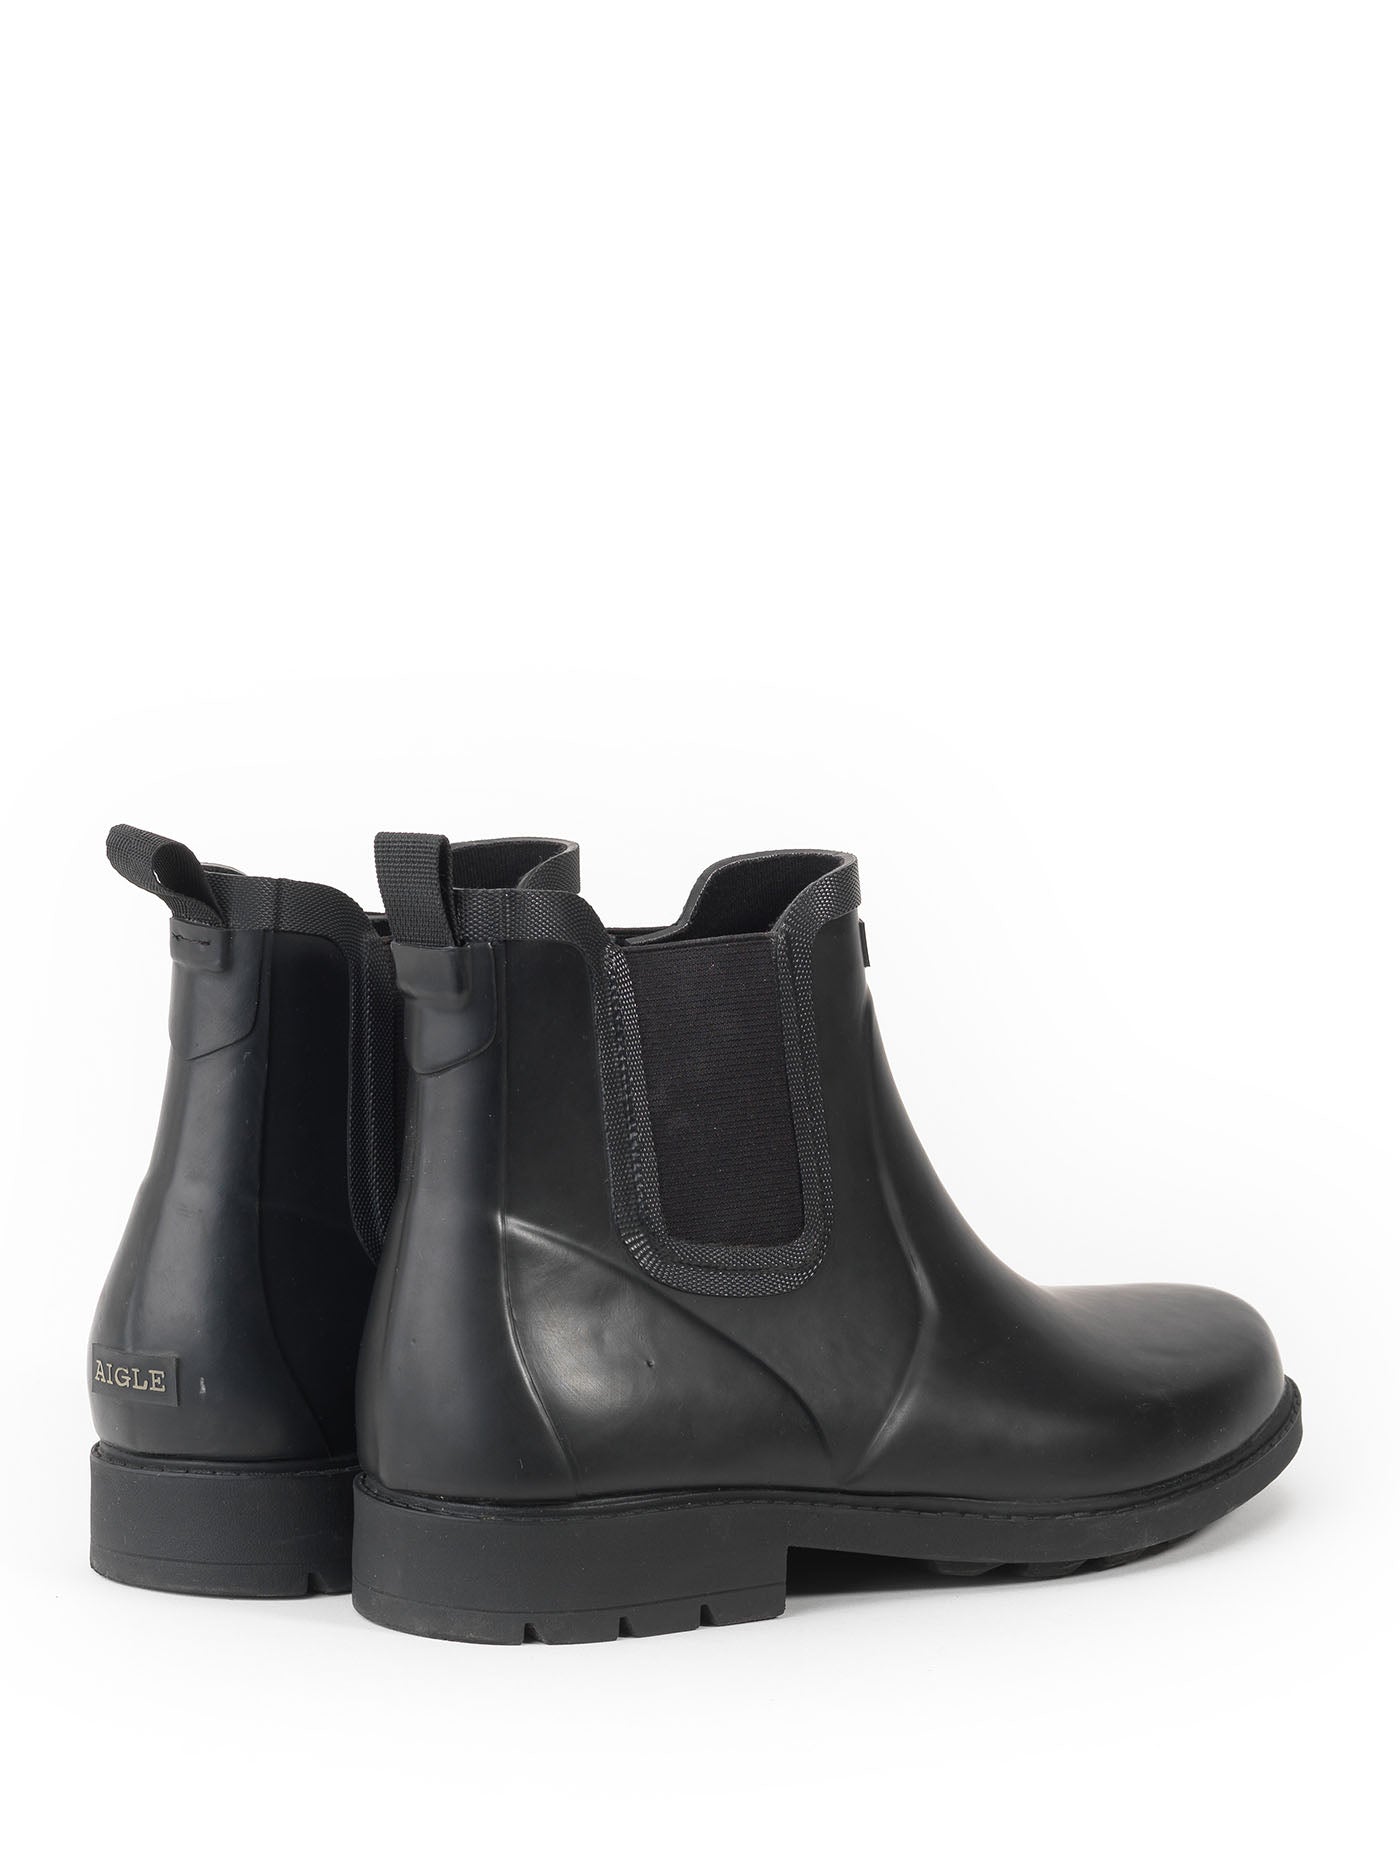 black rubber chelsea boots